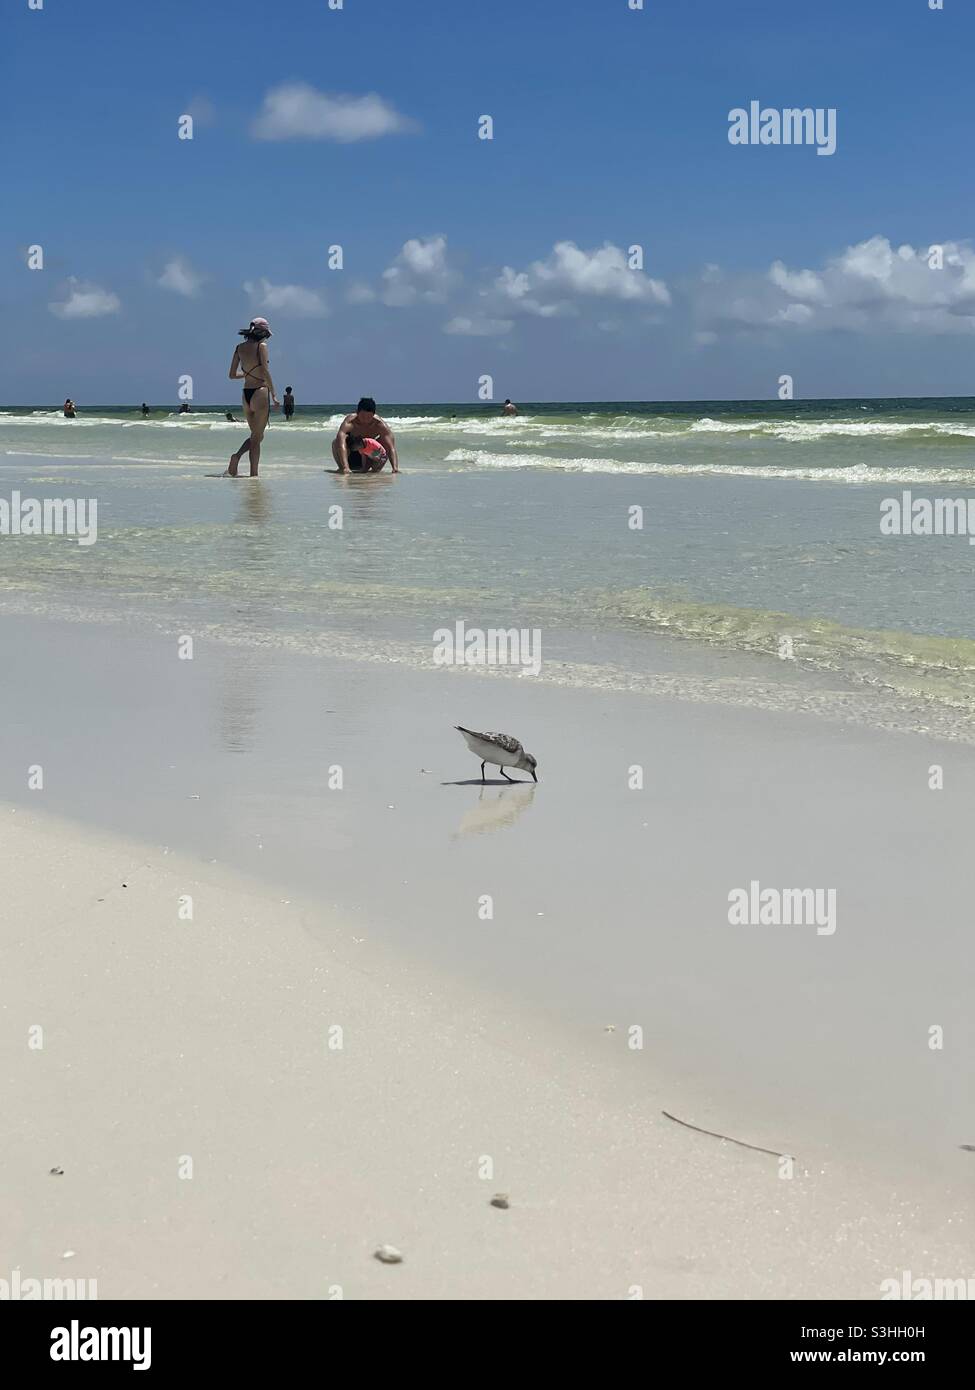 Familien genießen einen Sommerstrandtag mit einem sanderling-Vogel, der sich am Ufer ernährt Stockfoto